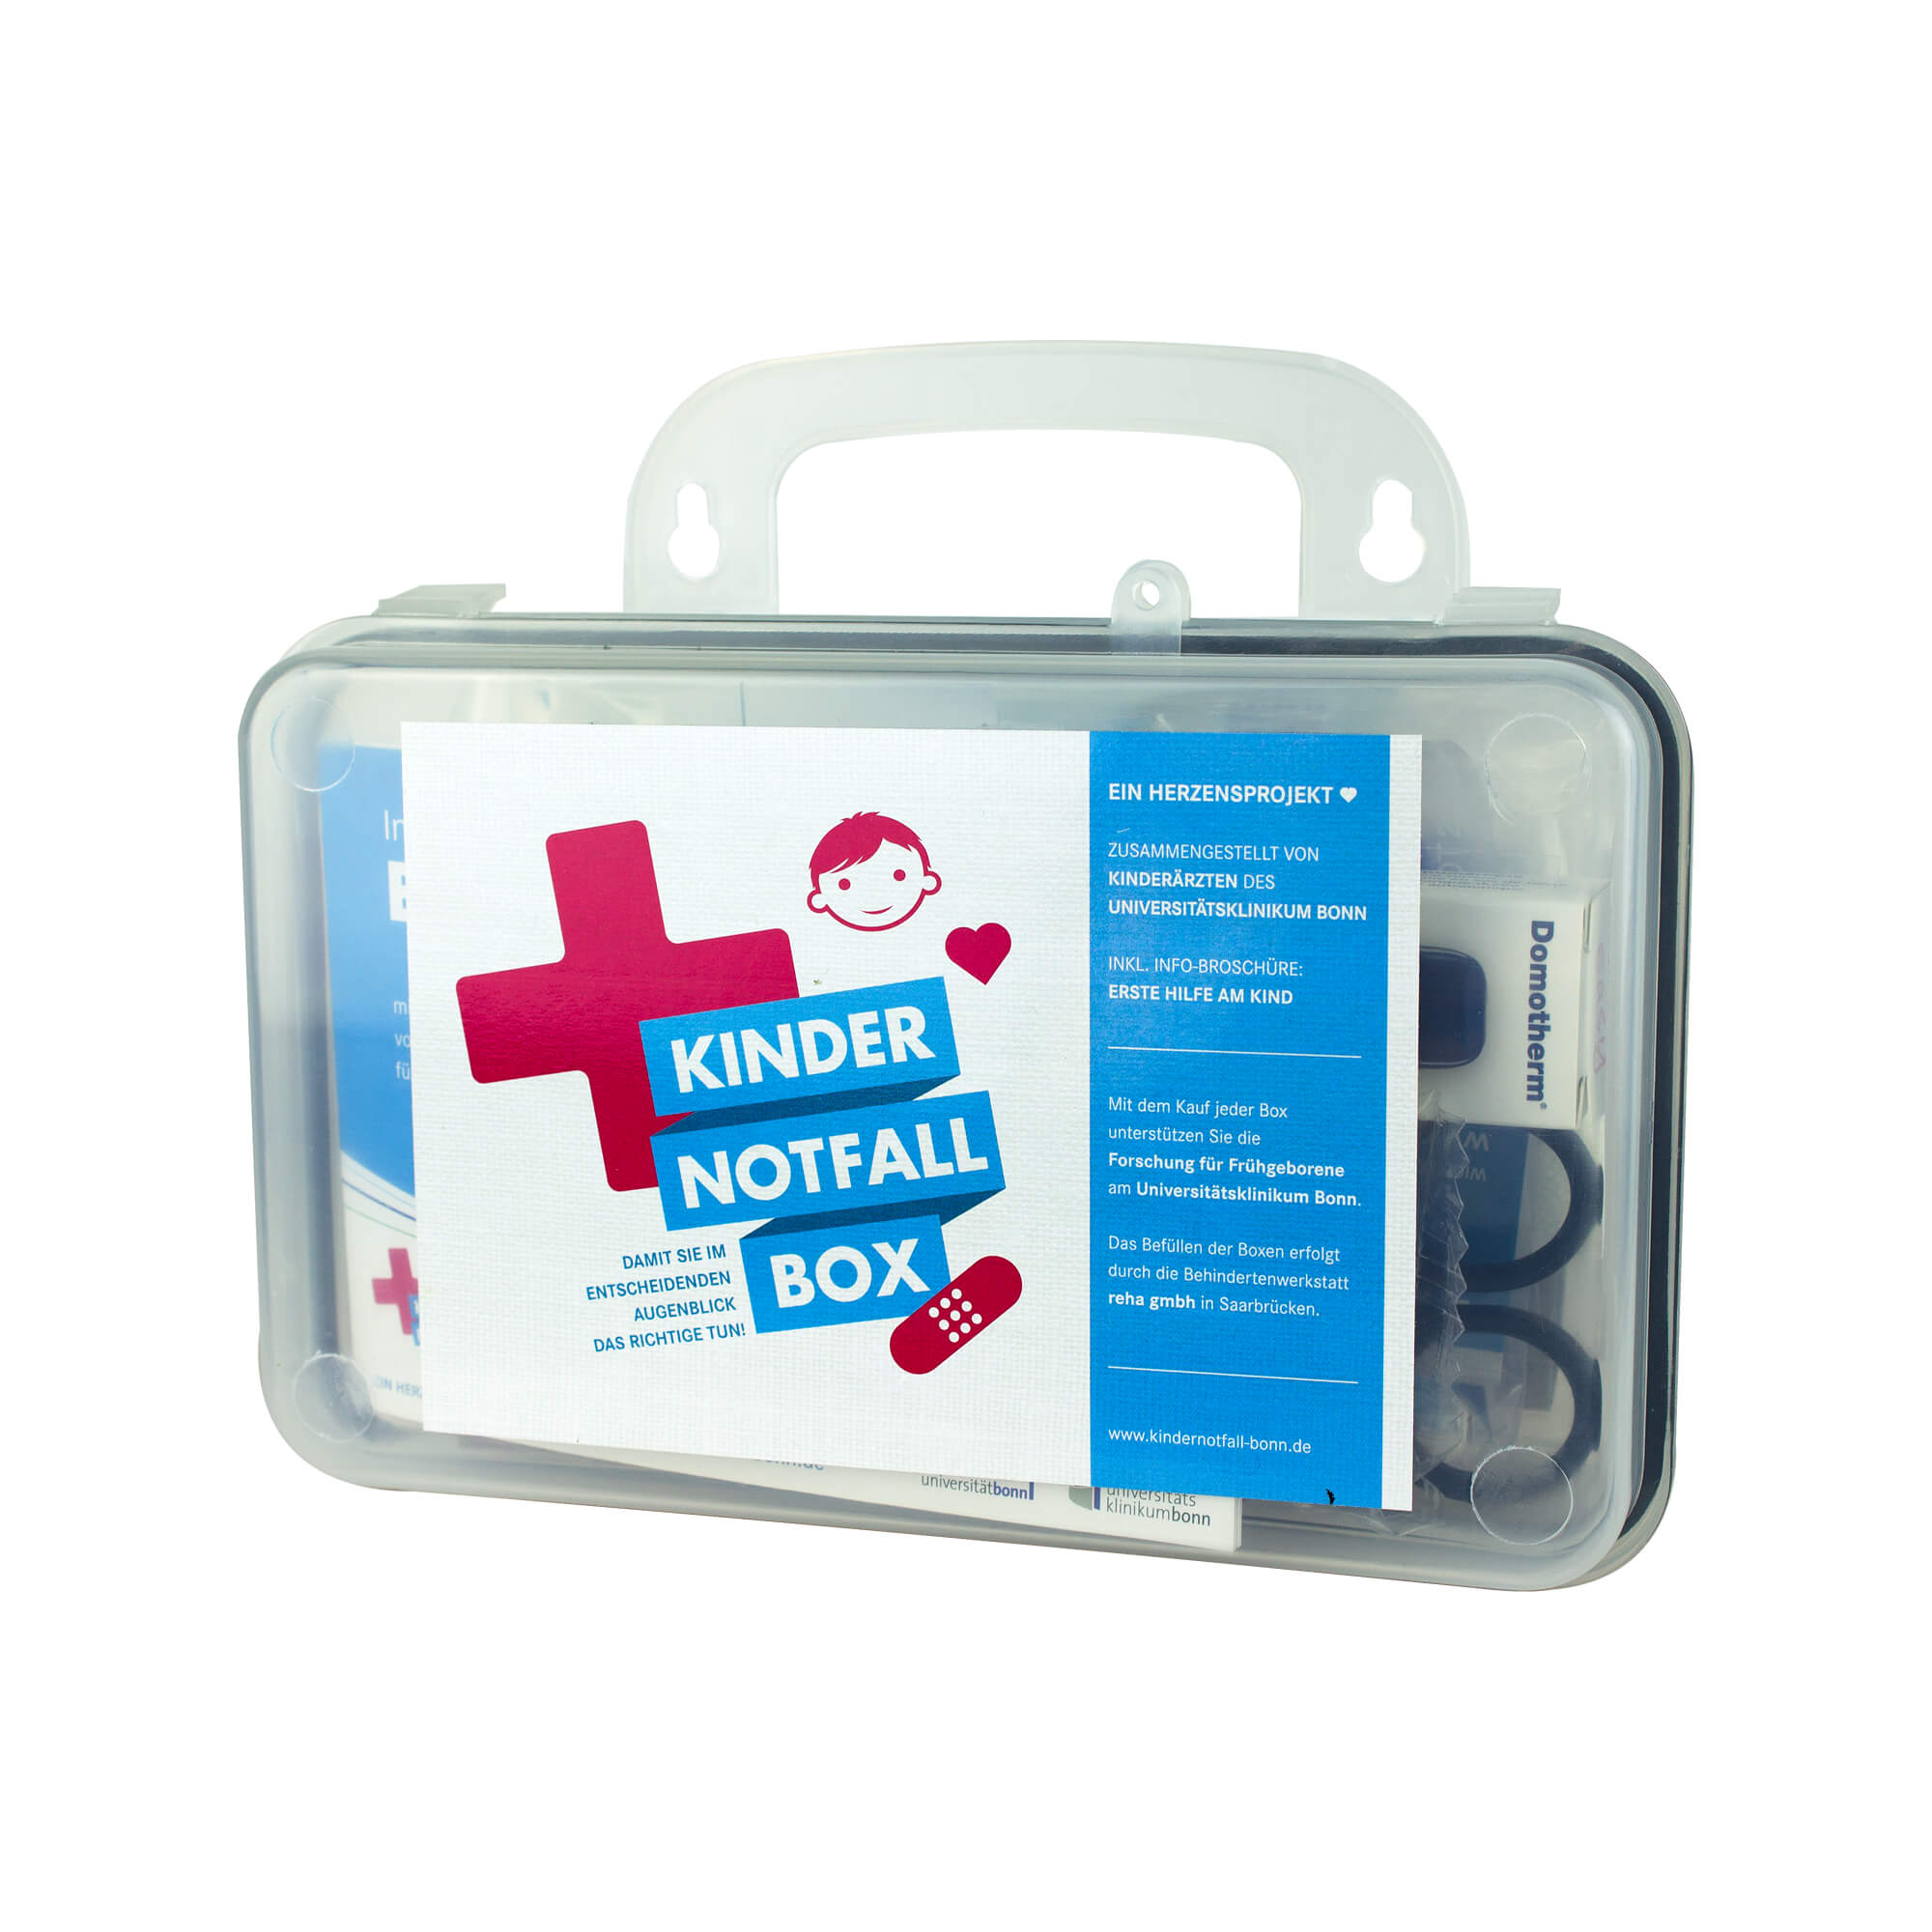 Stabile Notfallbox für die Erste Hilfe und zur Wundversorgung bei Kindern.